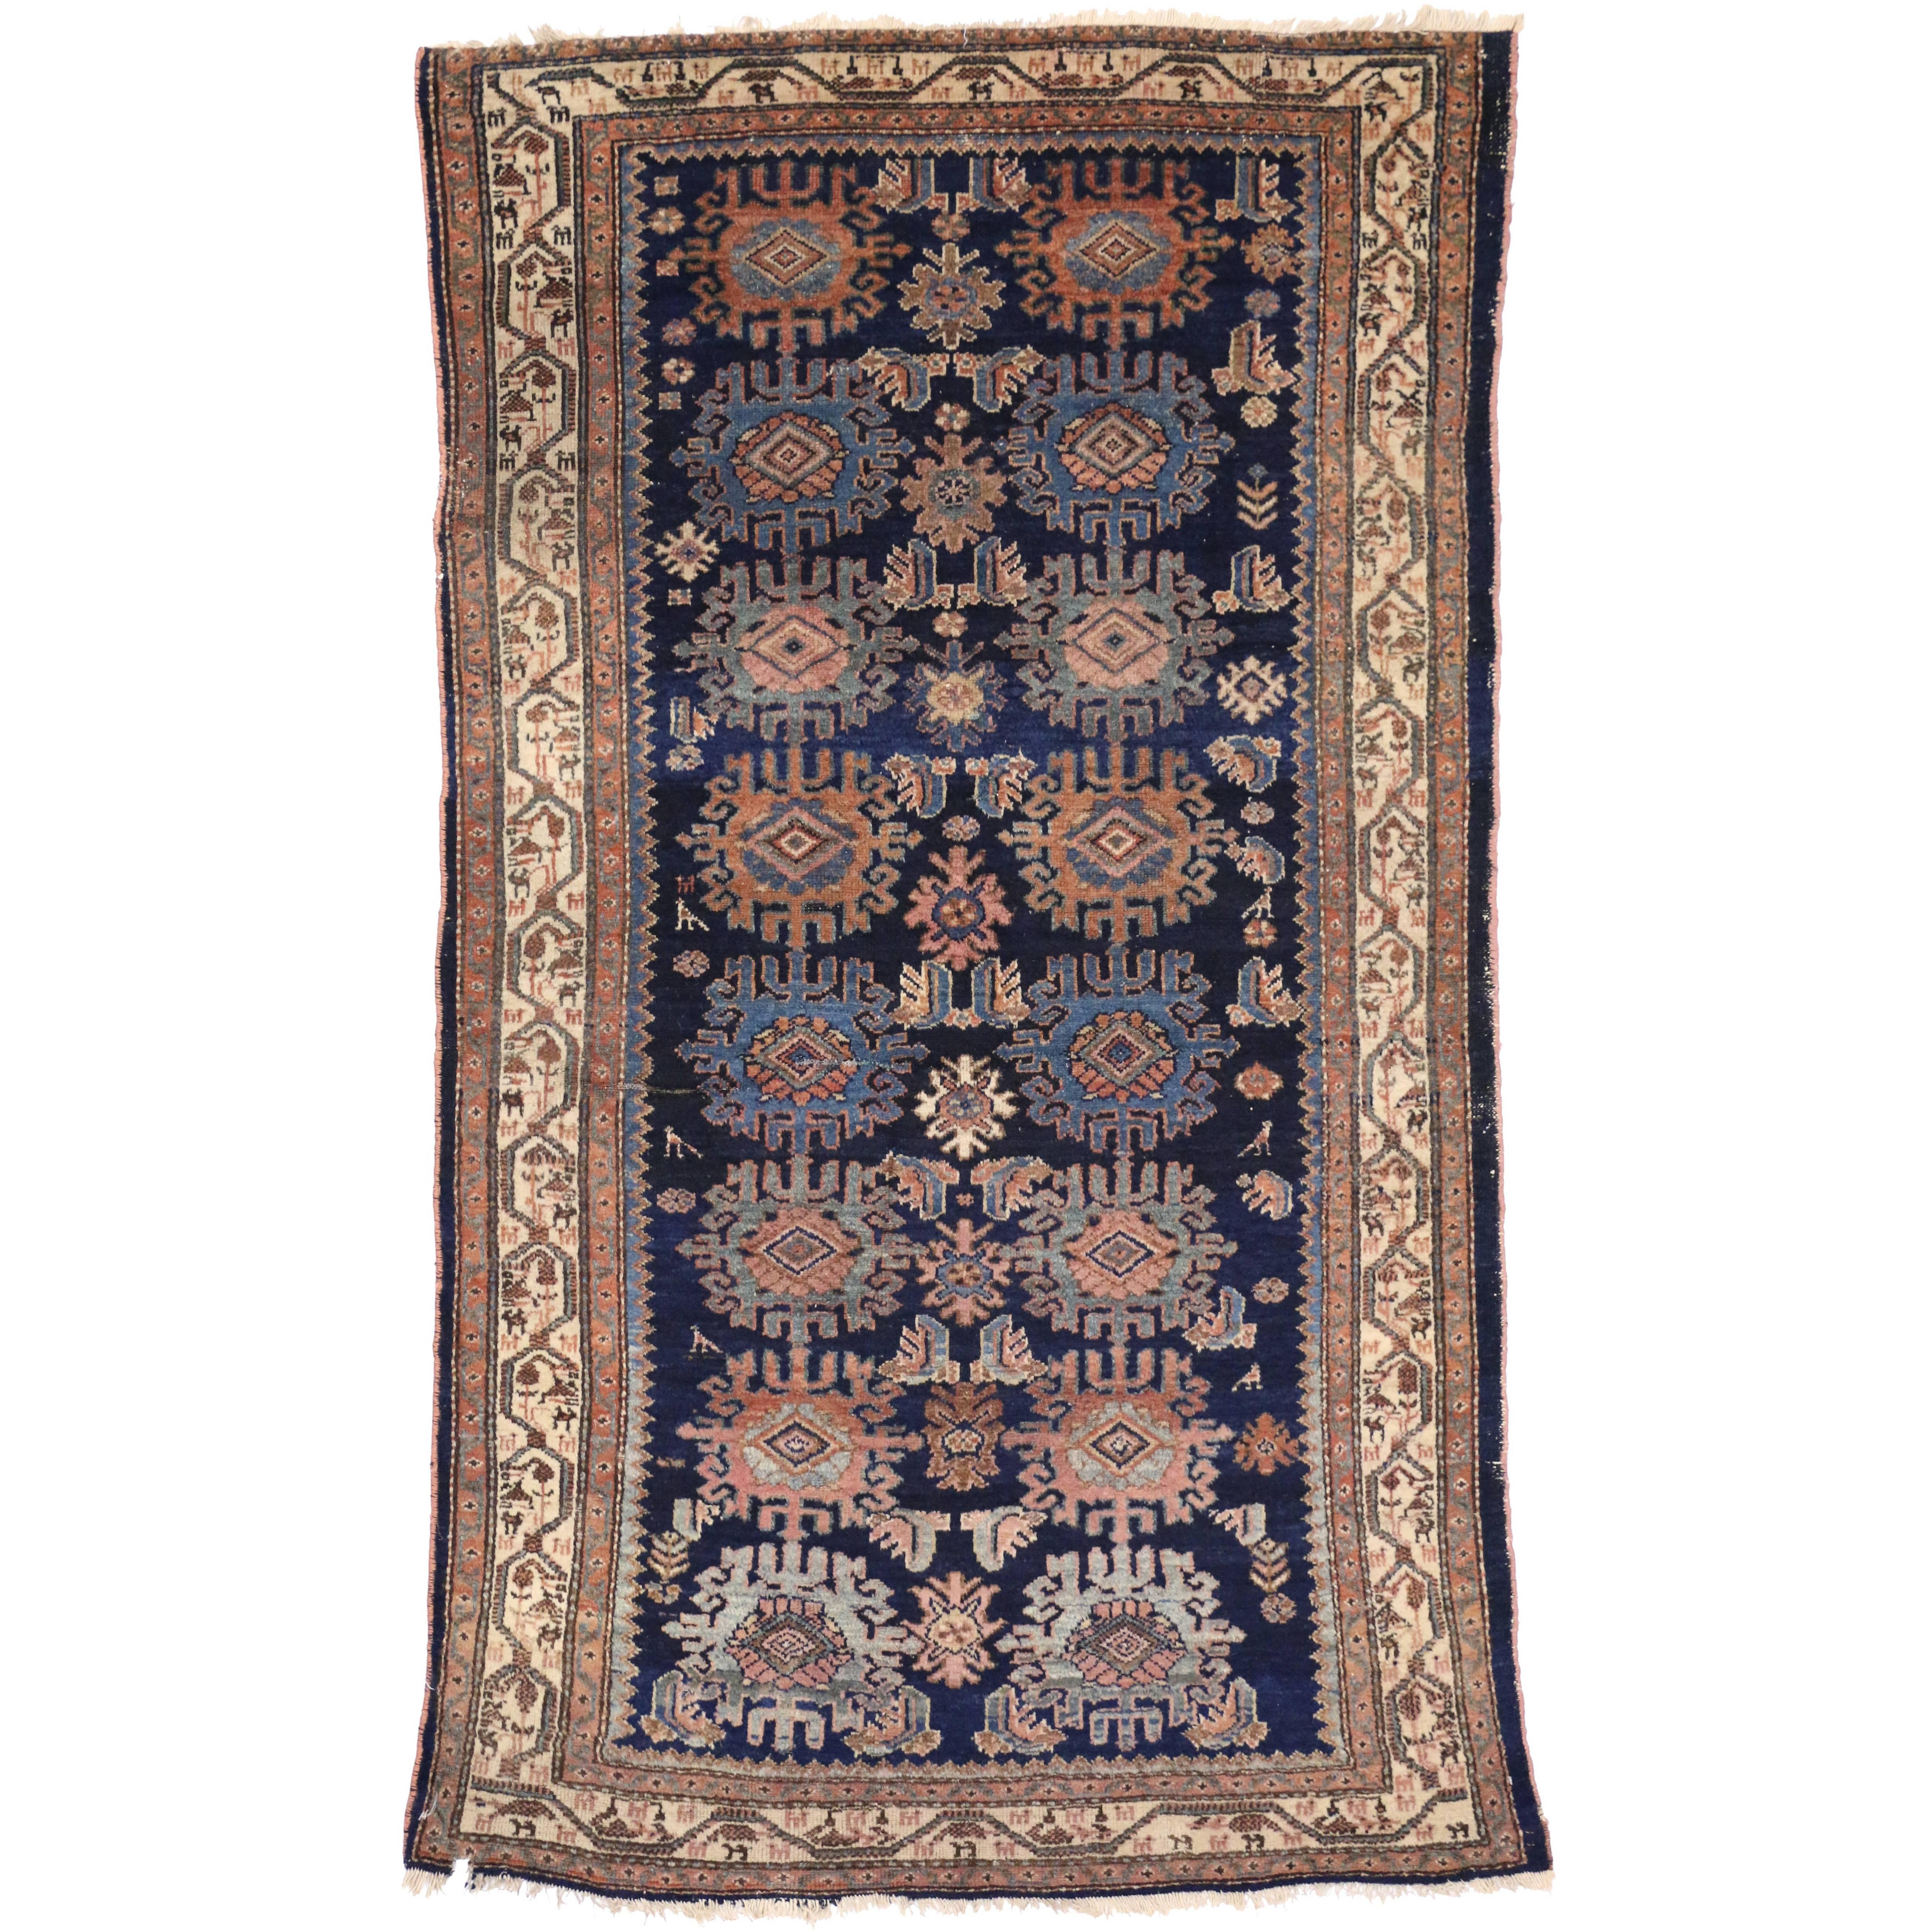 Traditioneller antiker persischer Malayer-Teppich im traditionellen Stil mit großformatigem geometrischem Druck